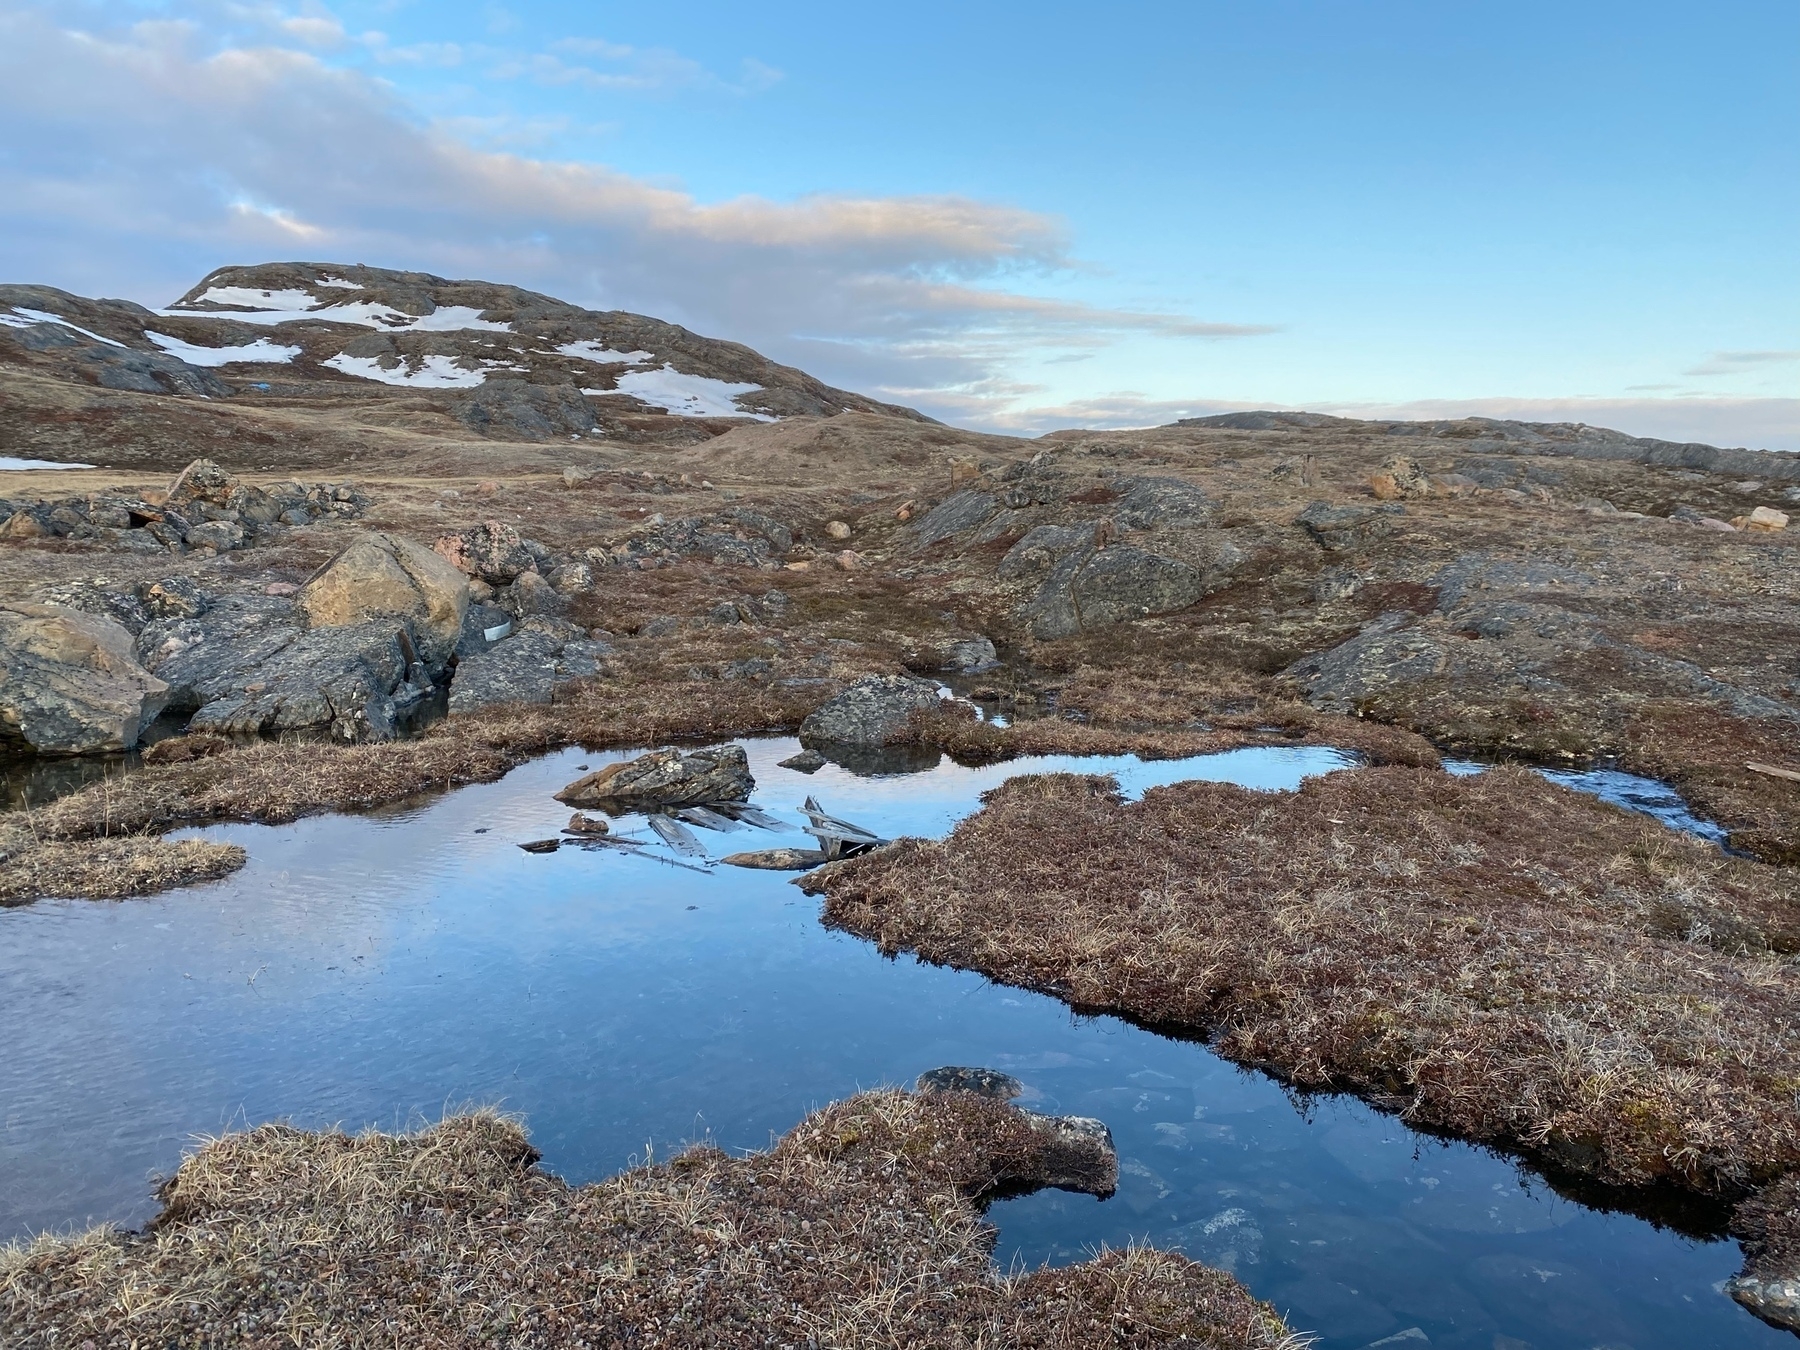 Evening hillside of rocky tundra